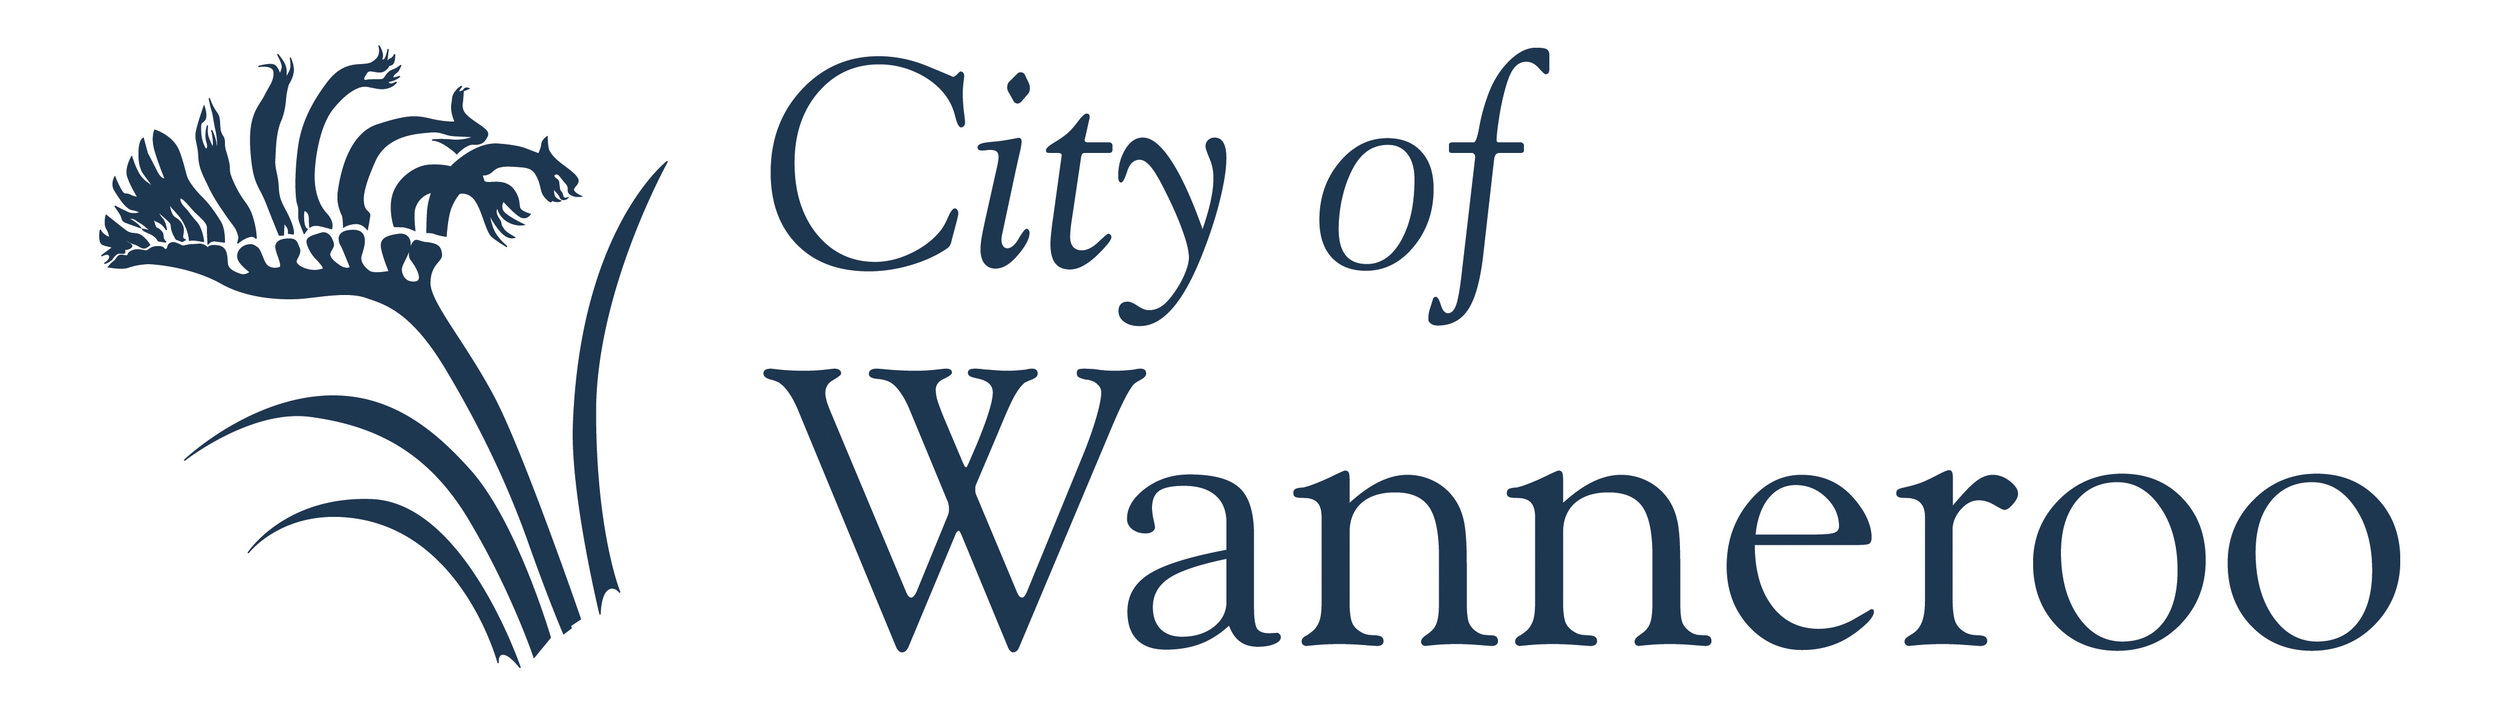 City of Waneroo Logo.jpg